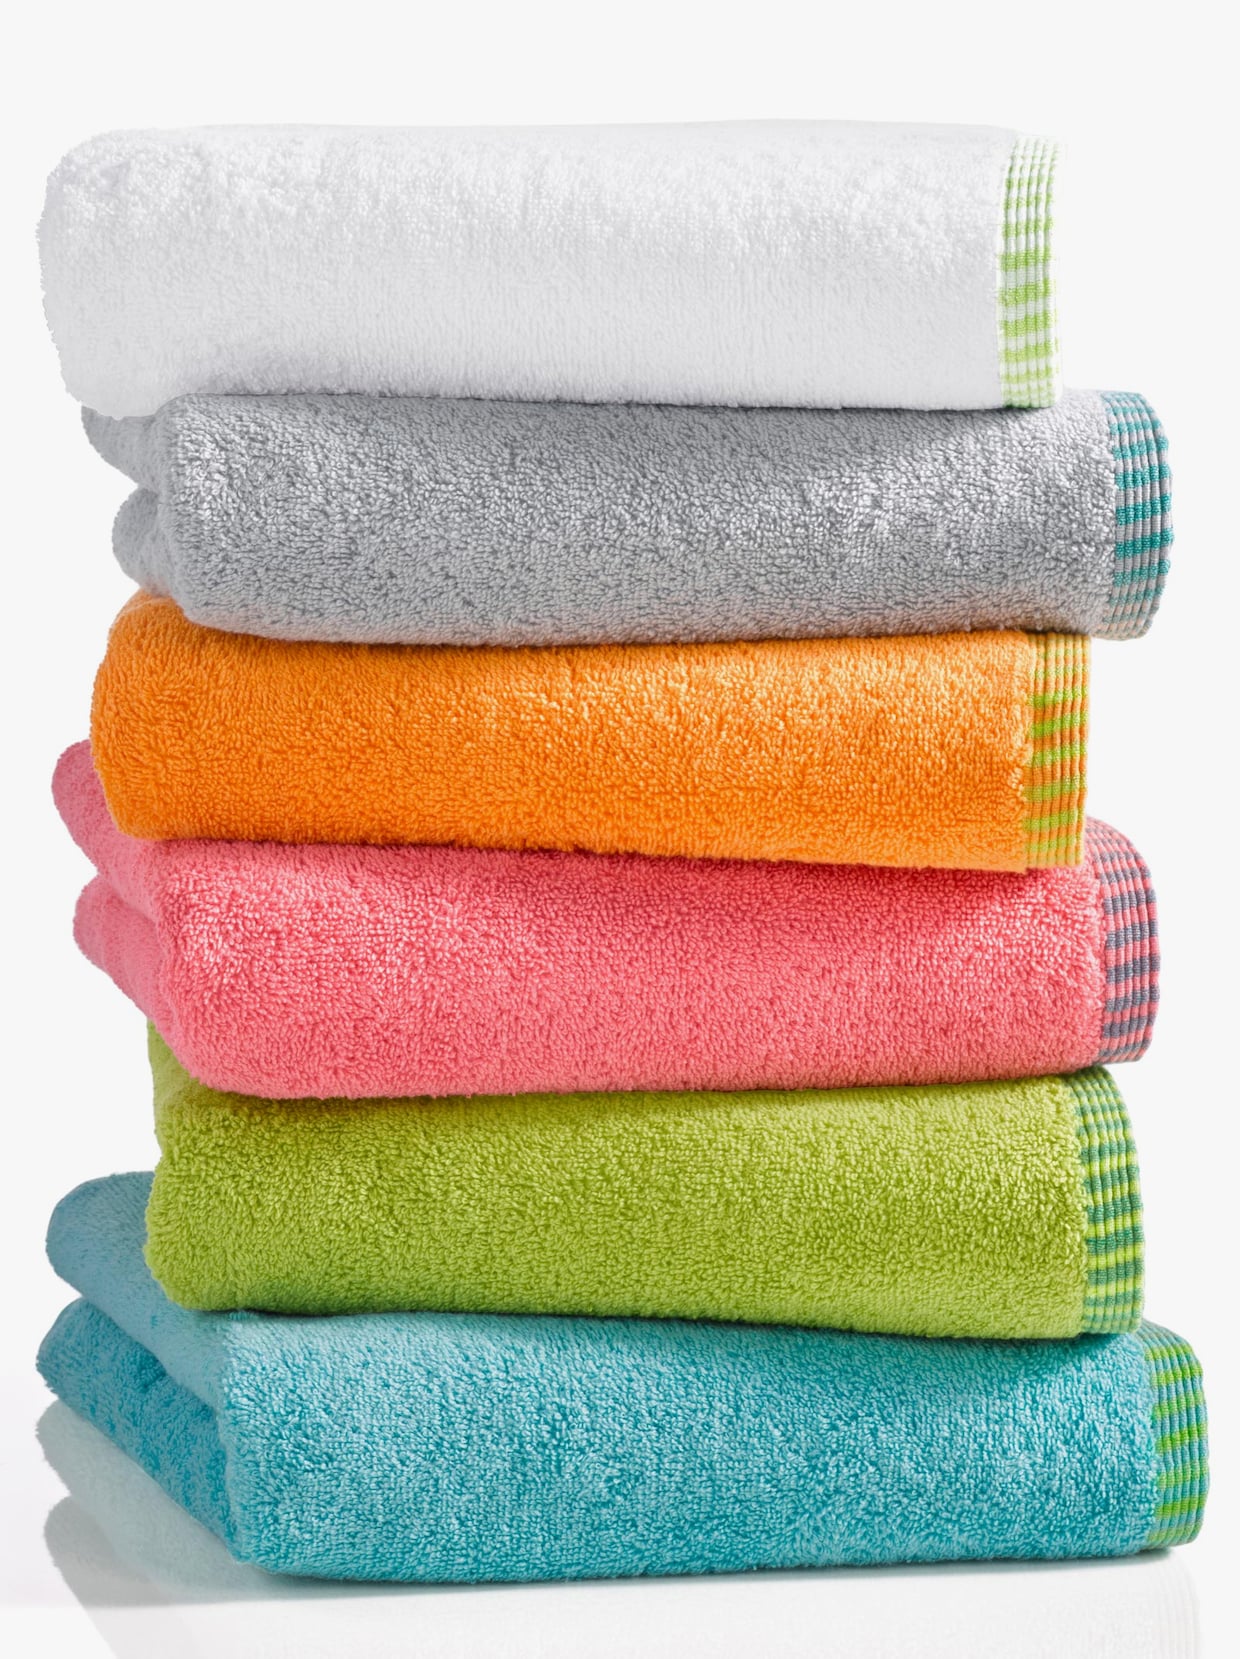 Unsere Top Favoriten - Suchen Sie hier die Handtücher violett entsprechend Ihrer Wünsche